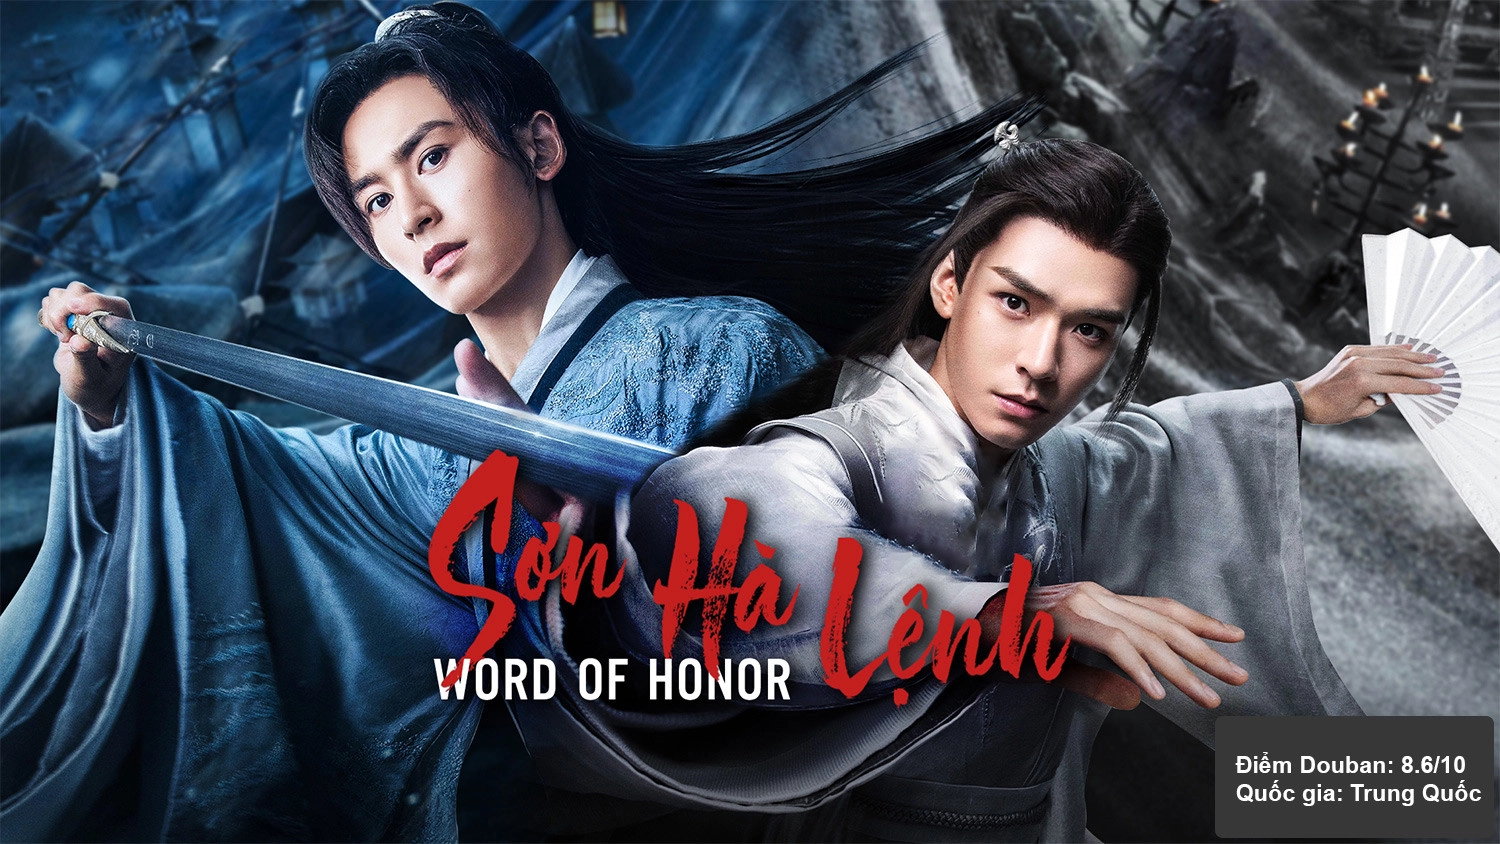 Word of Honor – Sơn Hà Lệnh